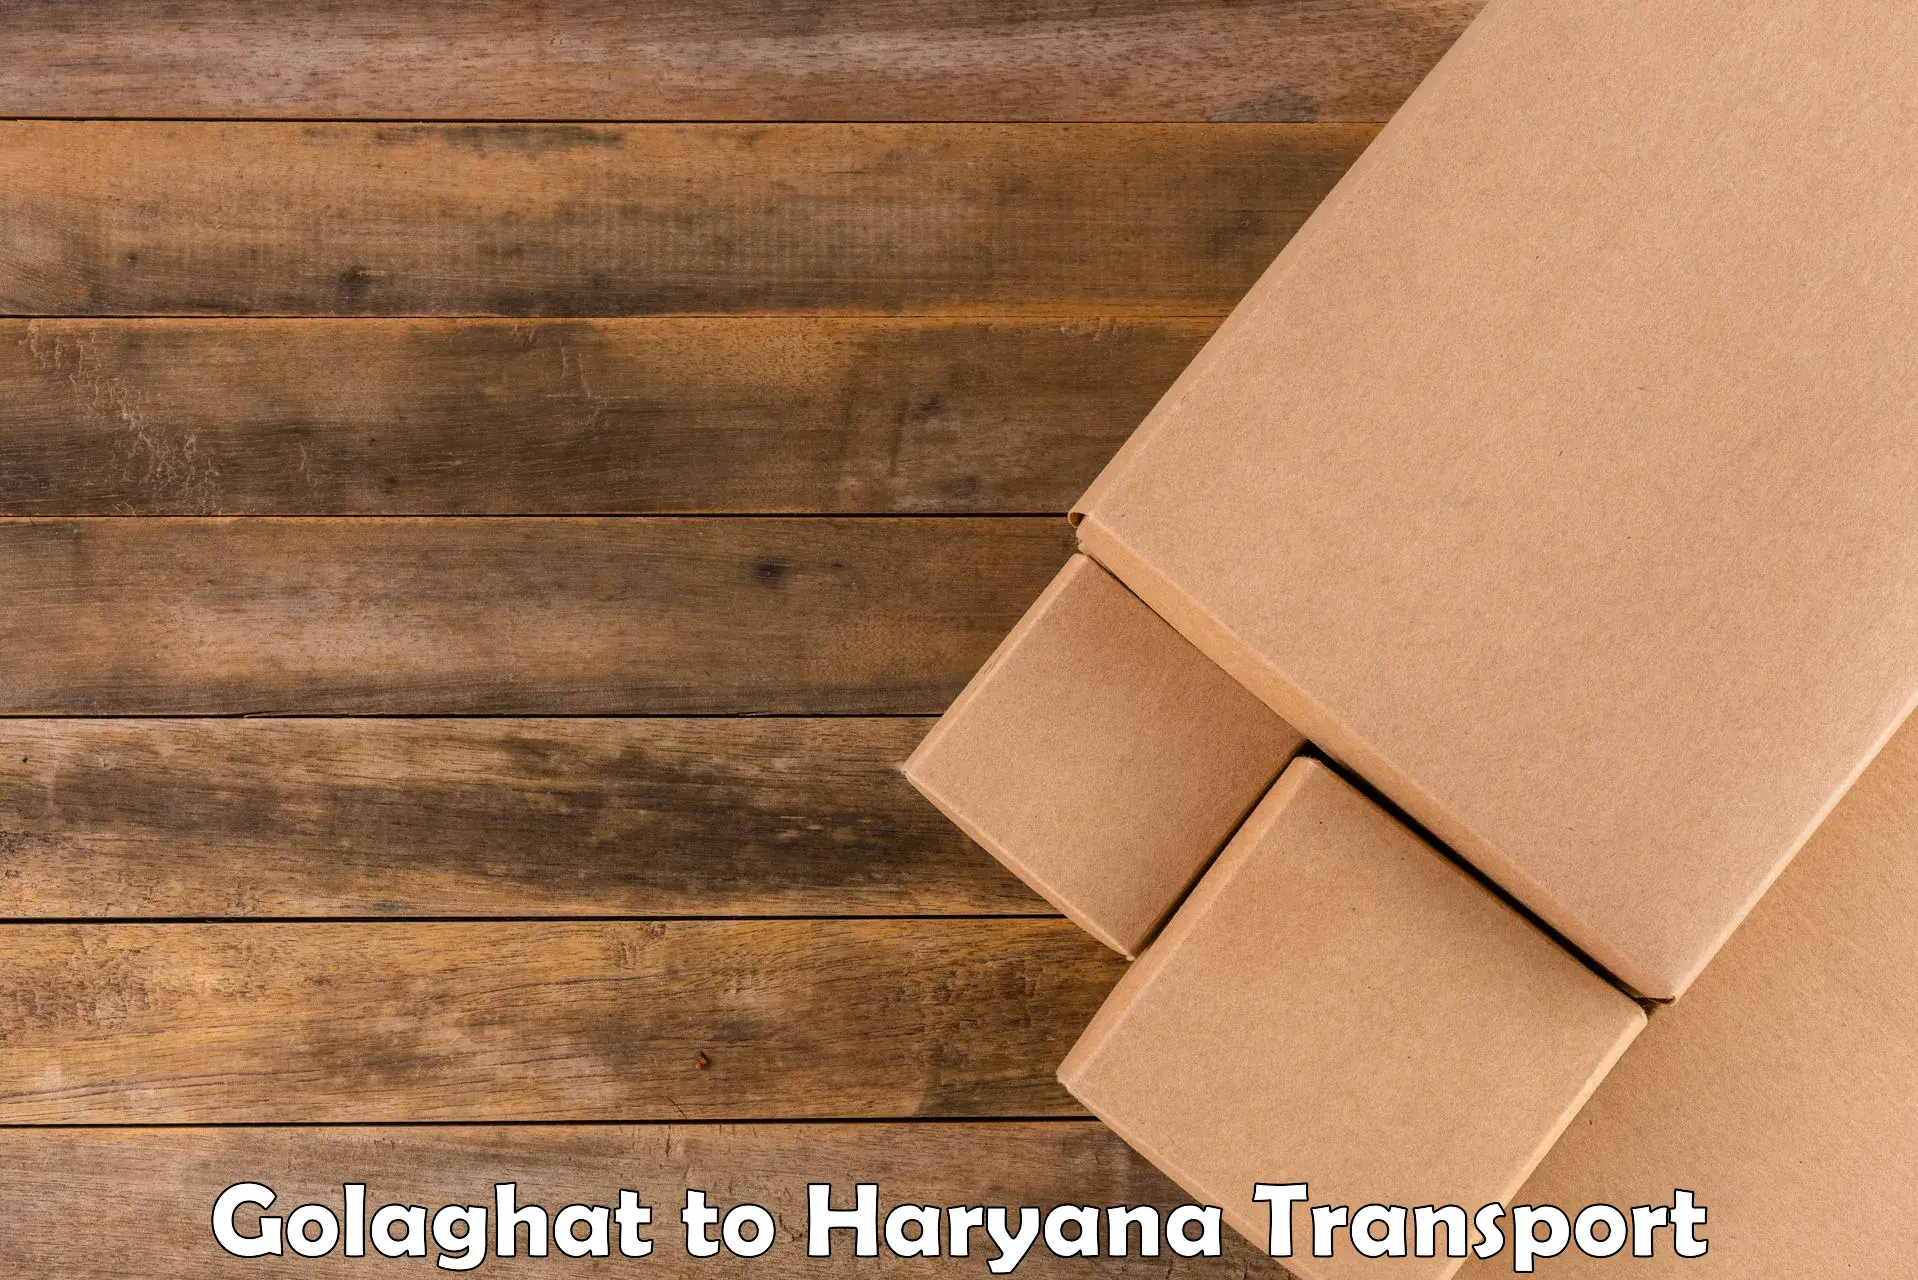 Parcel transport services Golaghat to Gurugram